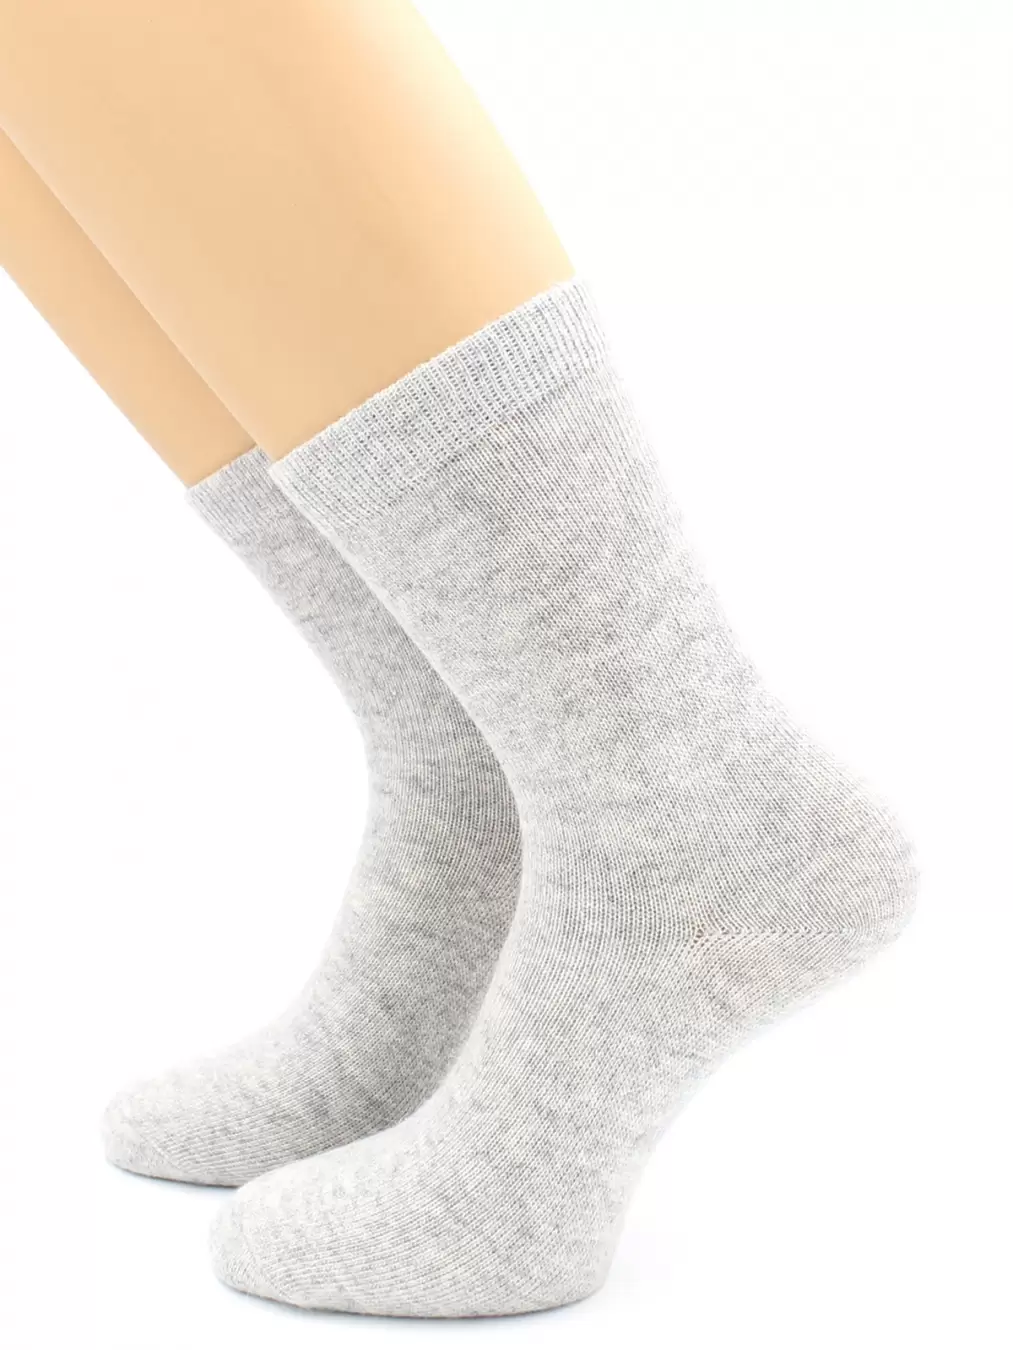 Hobby Line 7805, носки женские с ангорой внутри пуховые (изображение 1)